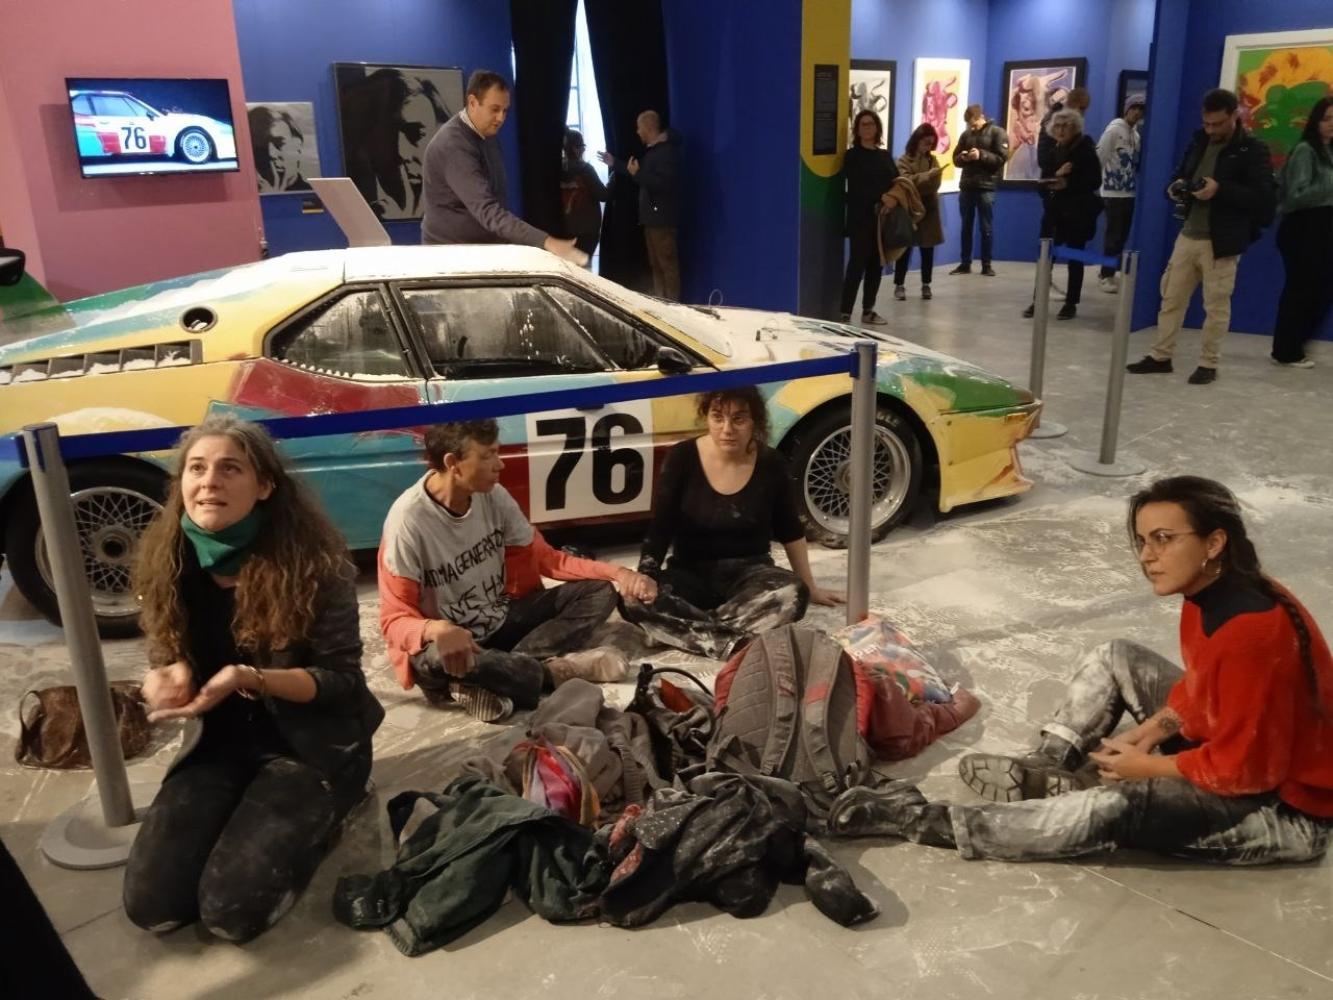 Klima-Aktivistinnen der Gruppe Letzte Generation (Ultima Generazione) haben im Kulturzentrum Fabbrica del Vapore acht Kilo Mehl auf ein Auto-Kunstwerk des US-Pop-Art-Künstlers Andy Warhol geworfen, um auf den "Kollaps des Klimas" aufmerksam zu machen